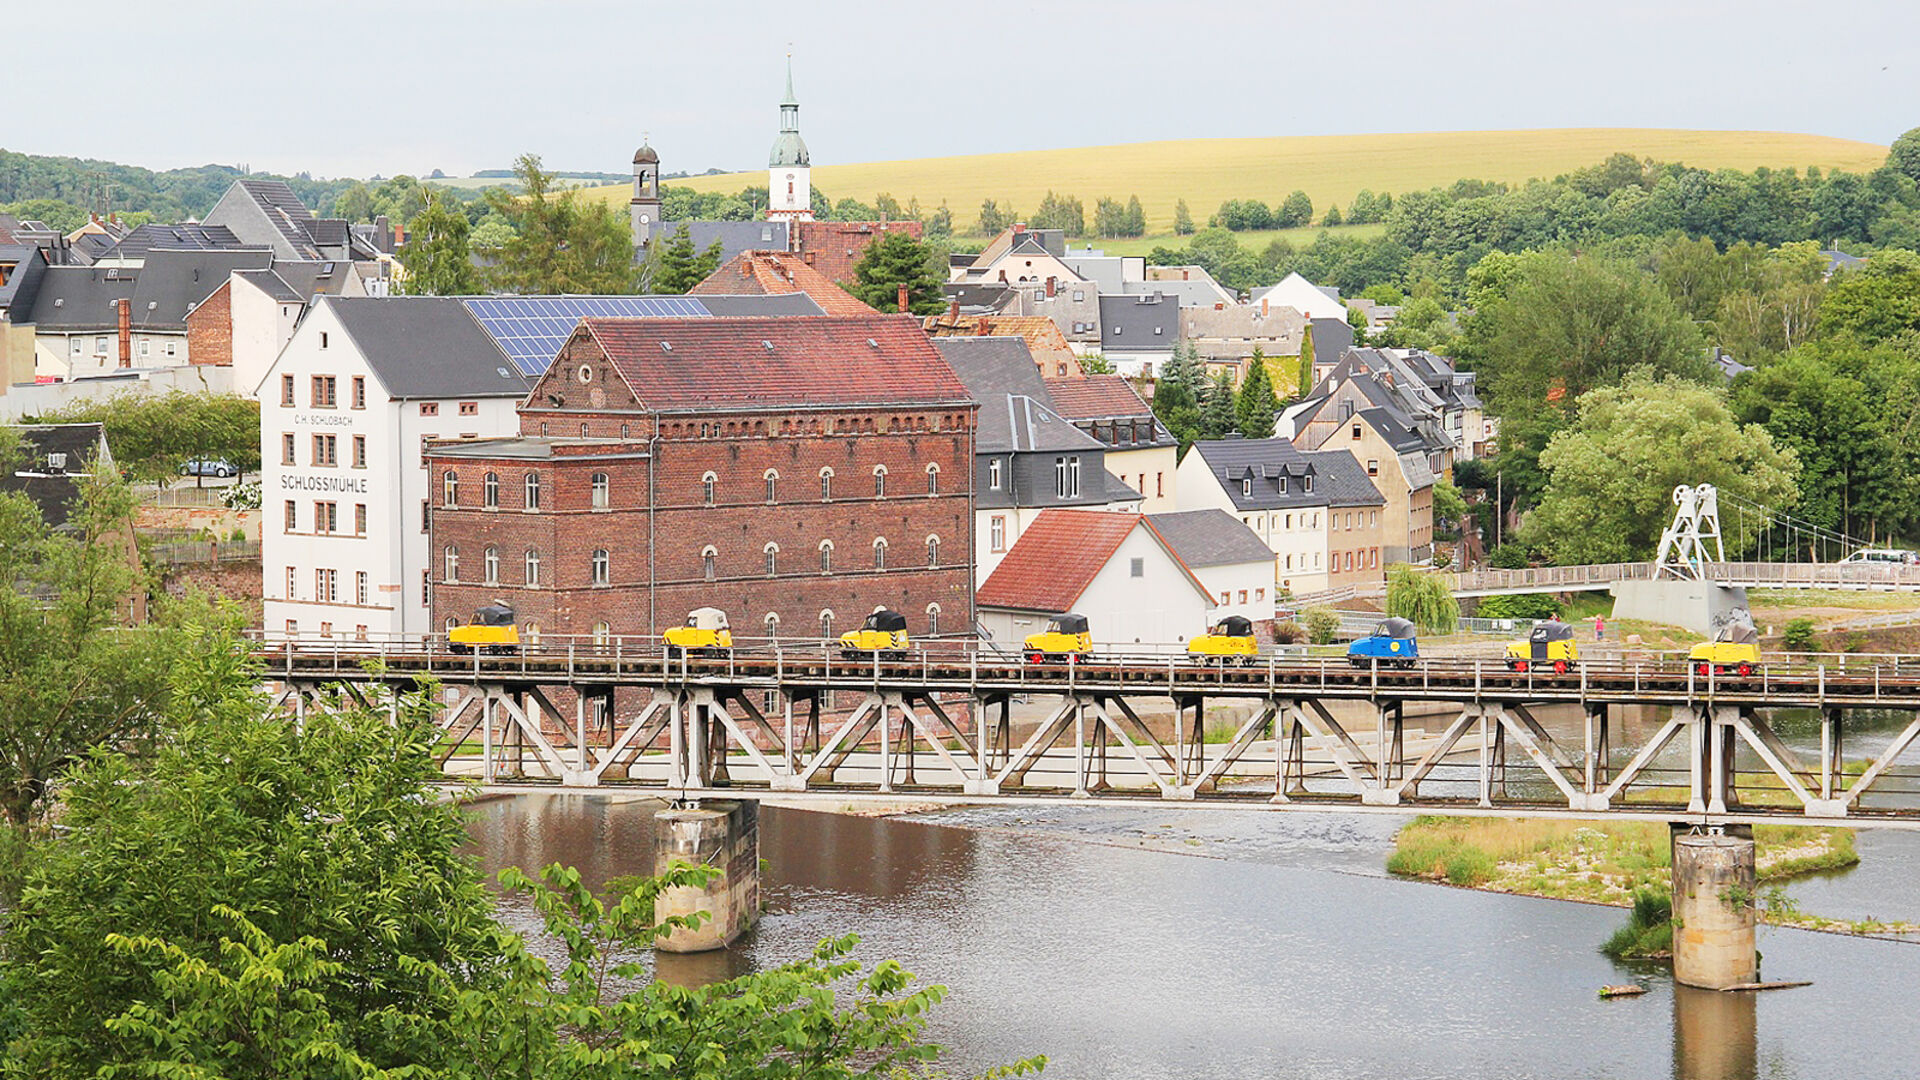 Schienentrabis in Rochlitz auf Muldenbrücke 
© Thomas Strömsdörfer